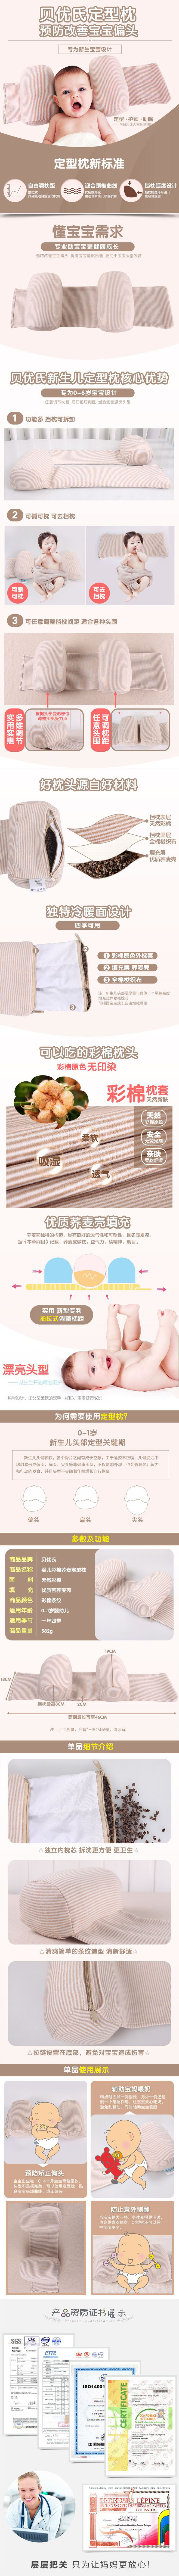 淘宝美工小曼曼婴儿定型枕宝宝枕头夏季透气矫正头型3-6个月纠正偏头作品